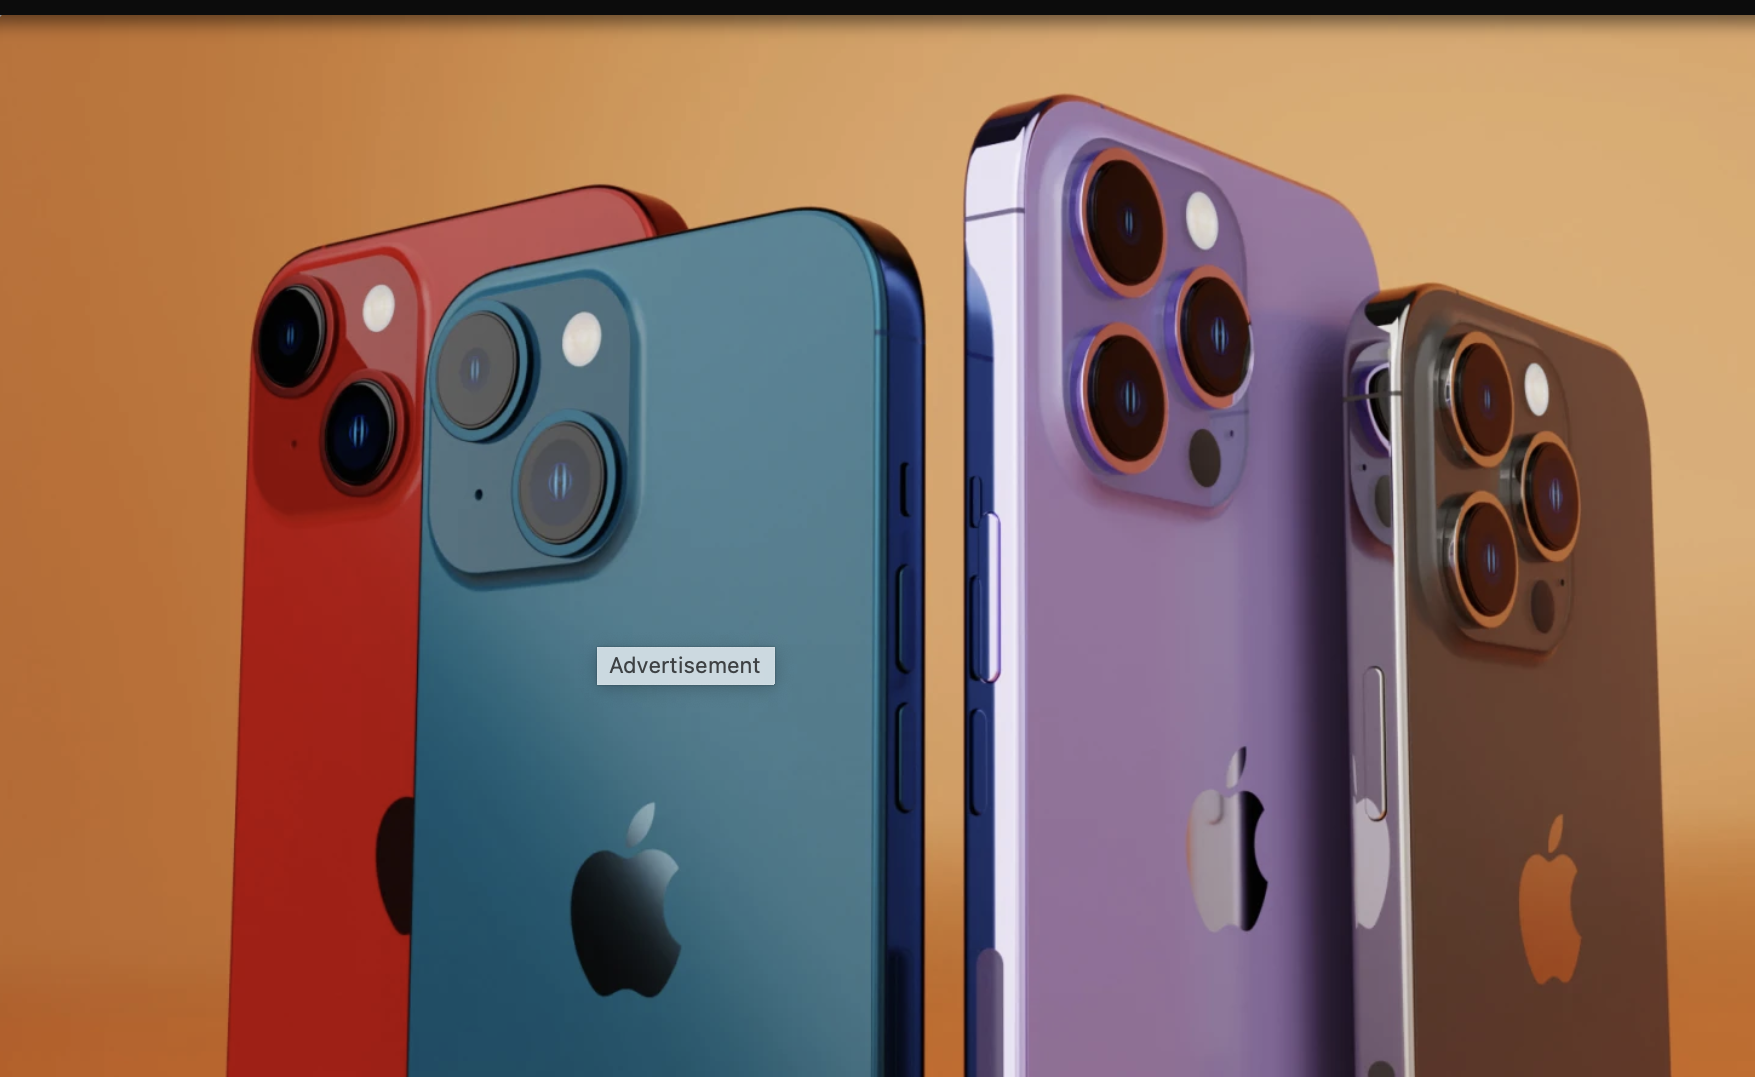 Bạn lo lắng về giá cả khi mua một chiếc iPhone mới? Đừng lo lắng, vì Apple luôn tạo ra những sản phẩm vừa chất lượng vừa phải chăng. Với giá cả cạnh tranh, iPhone 14 sẽ là một sự lựa chọn hoàn hảo cho nhu cầu của bạn. Hãy xem hình ảnh để cảm nhận rõ hơn nhé!